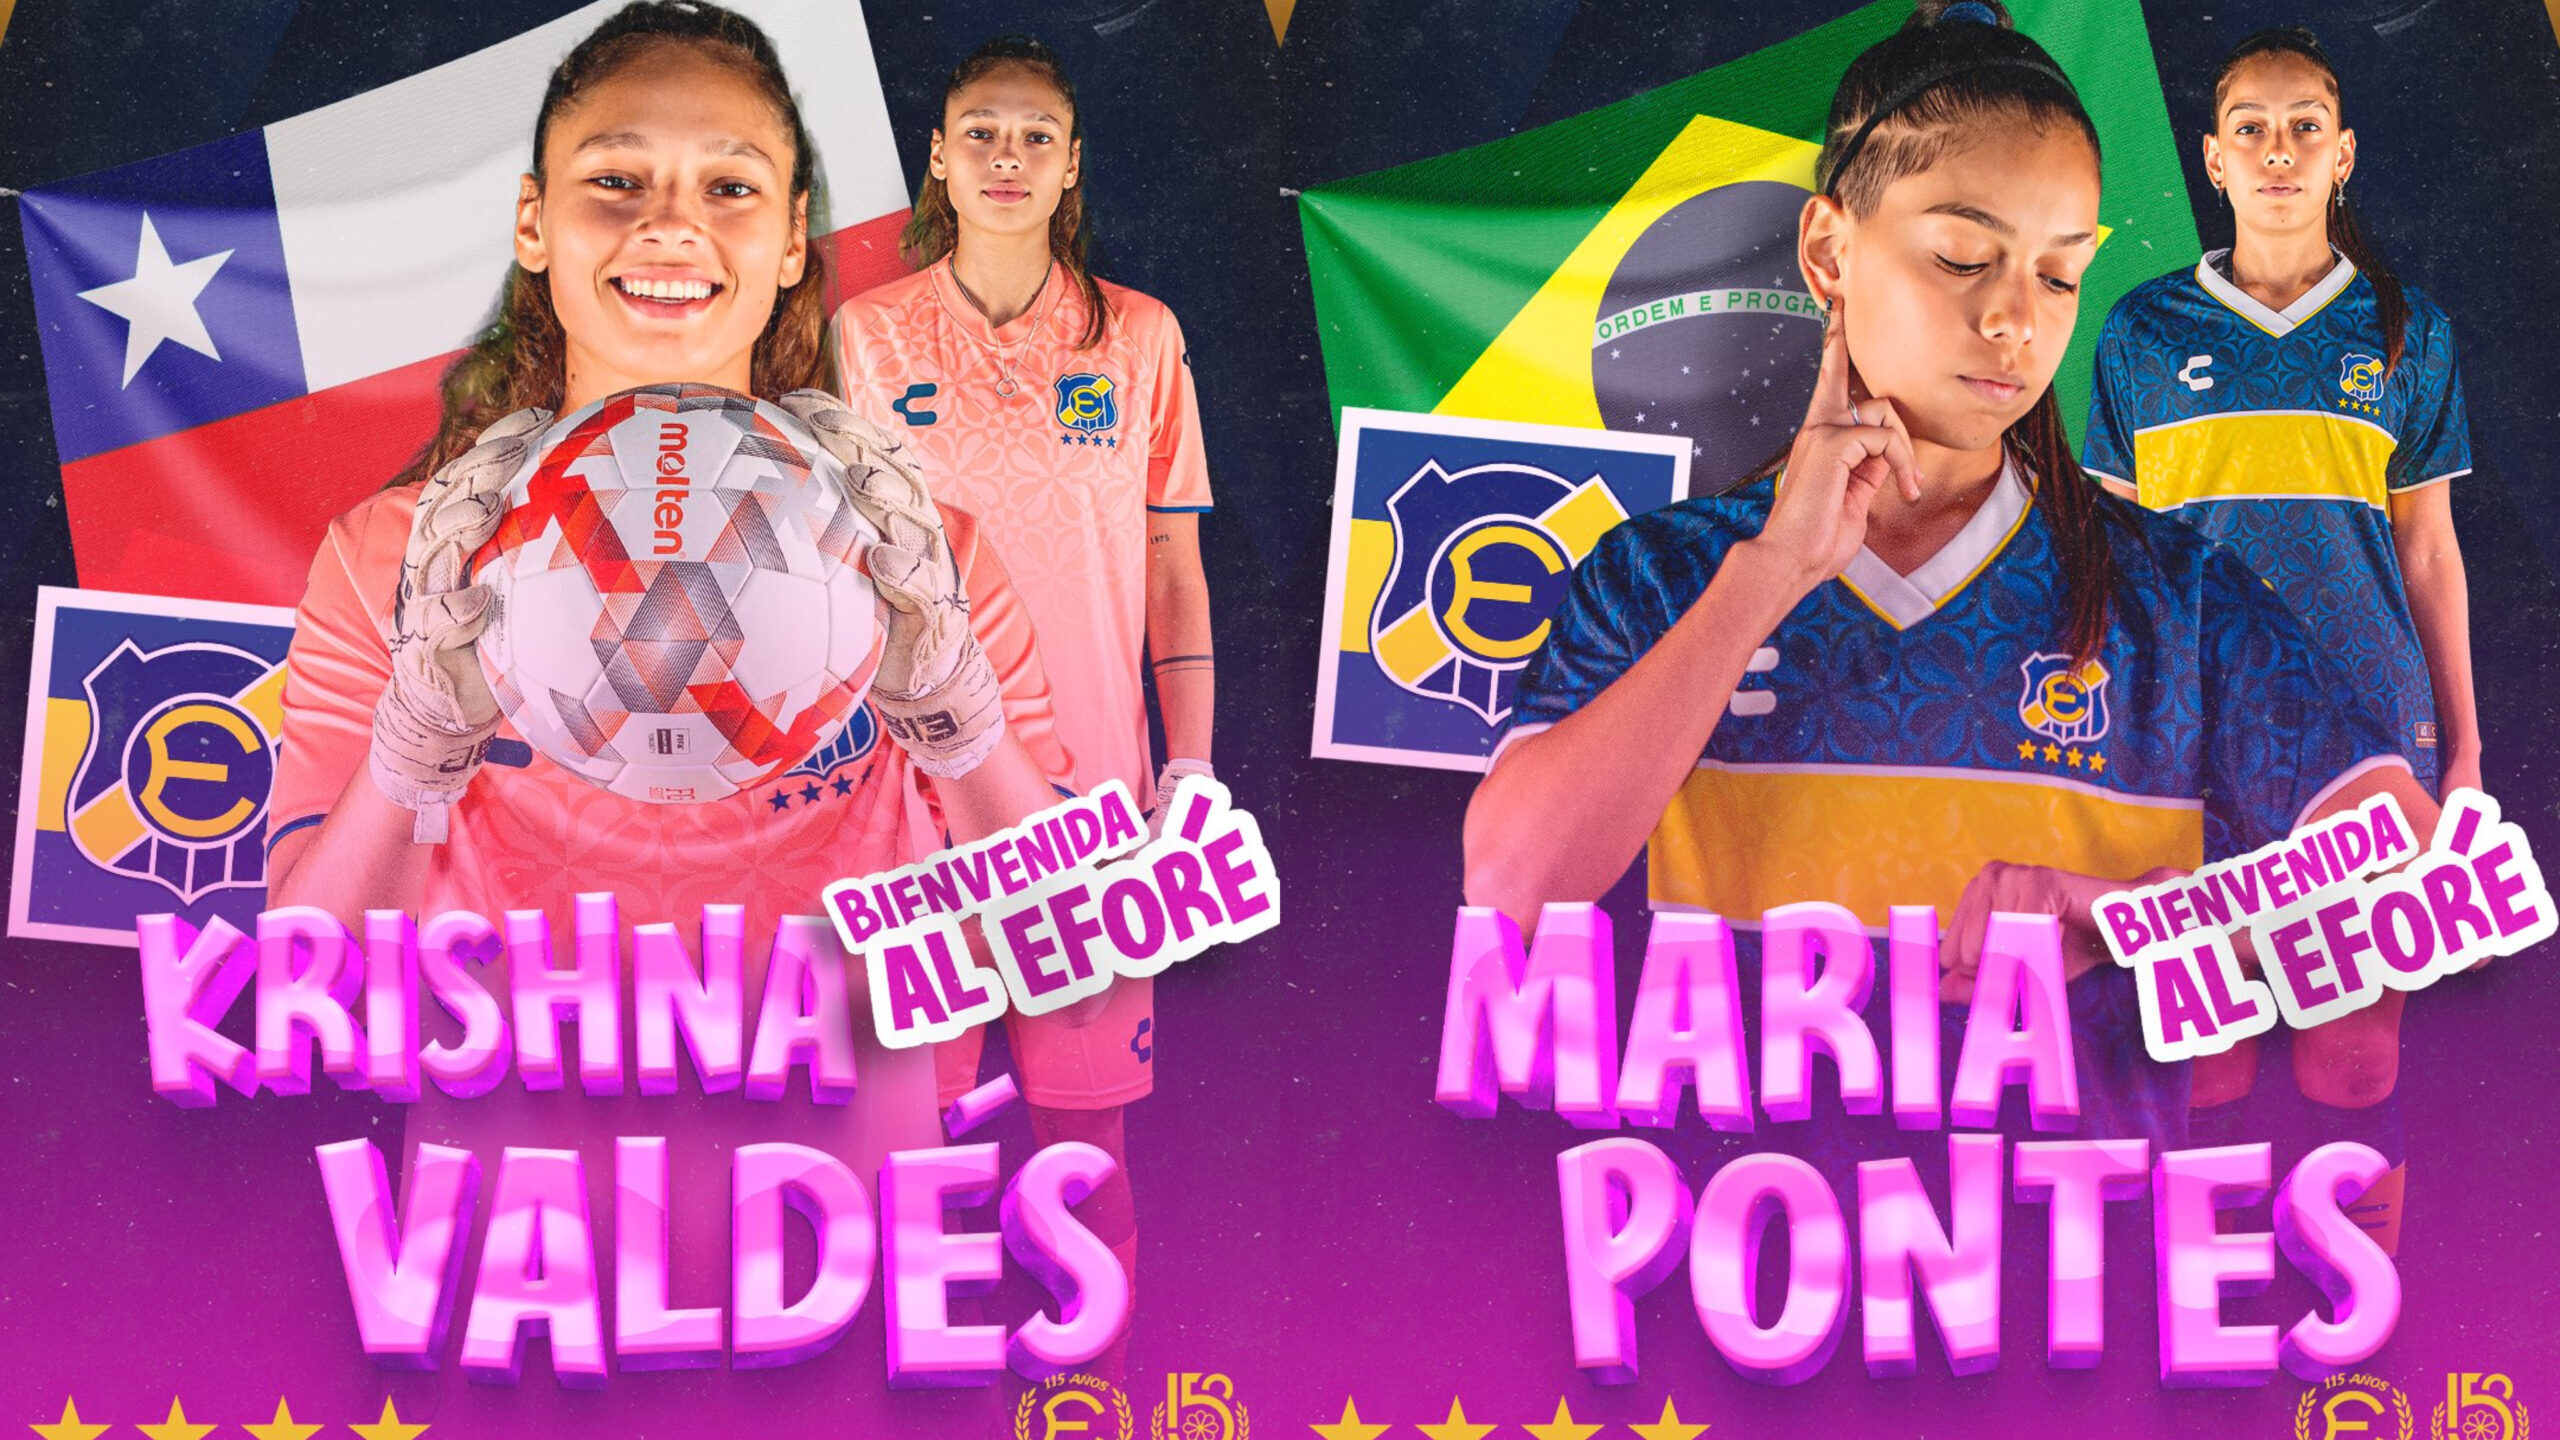 Krishnna Valdés y María Fernanda Pontes son fichajes de Everton